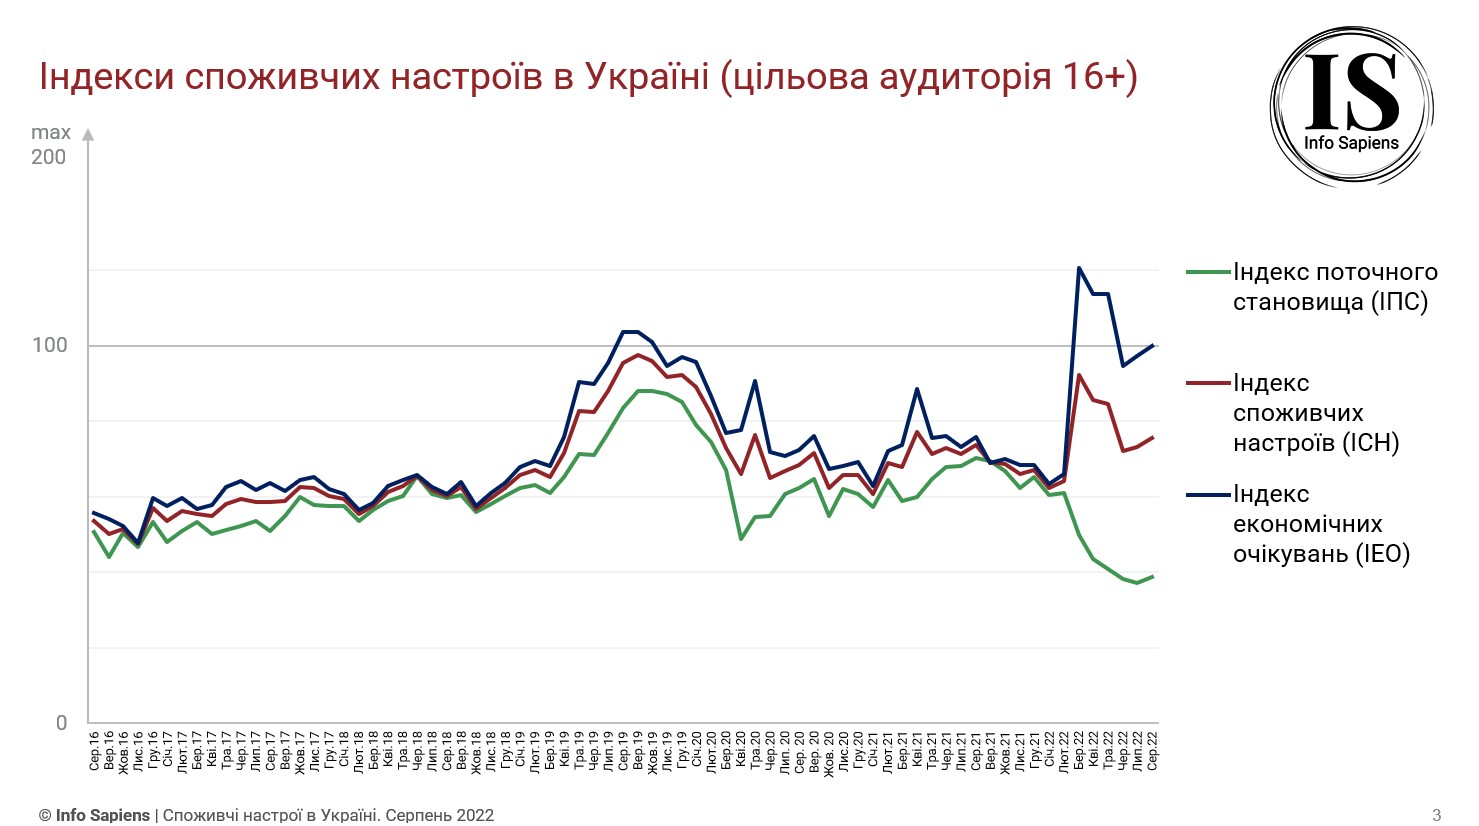 Графік динаміки індексу споживчих настроїв в Україні за серпень 2022 (цільова аудиторія 16+)